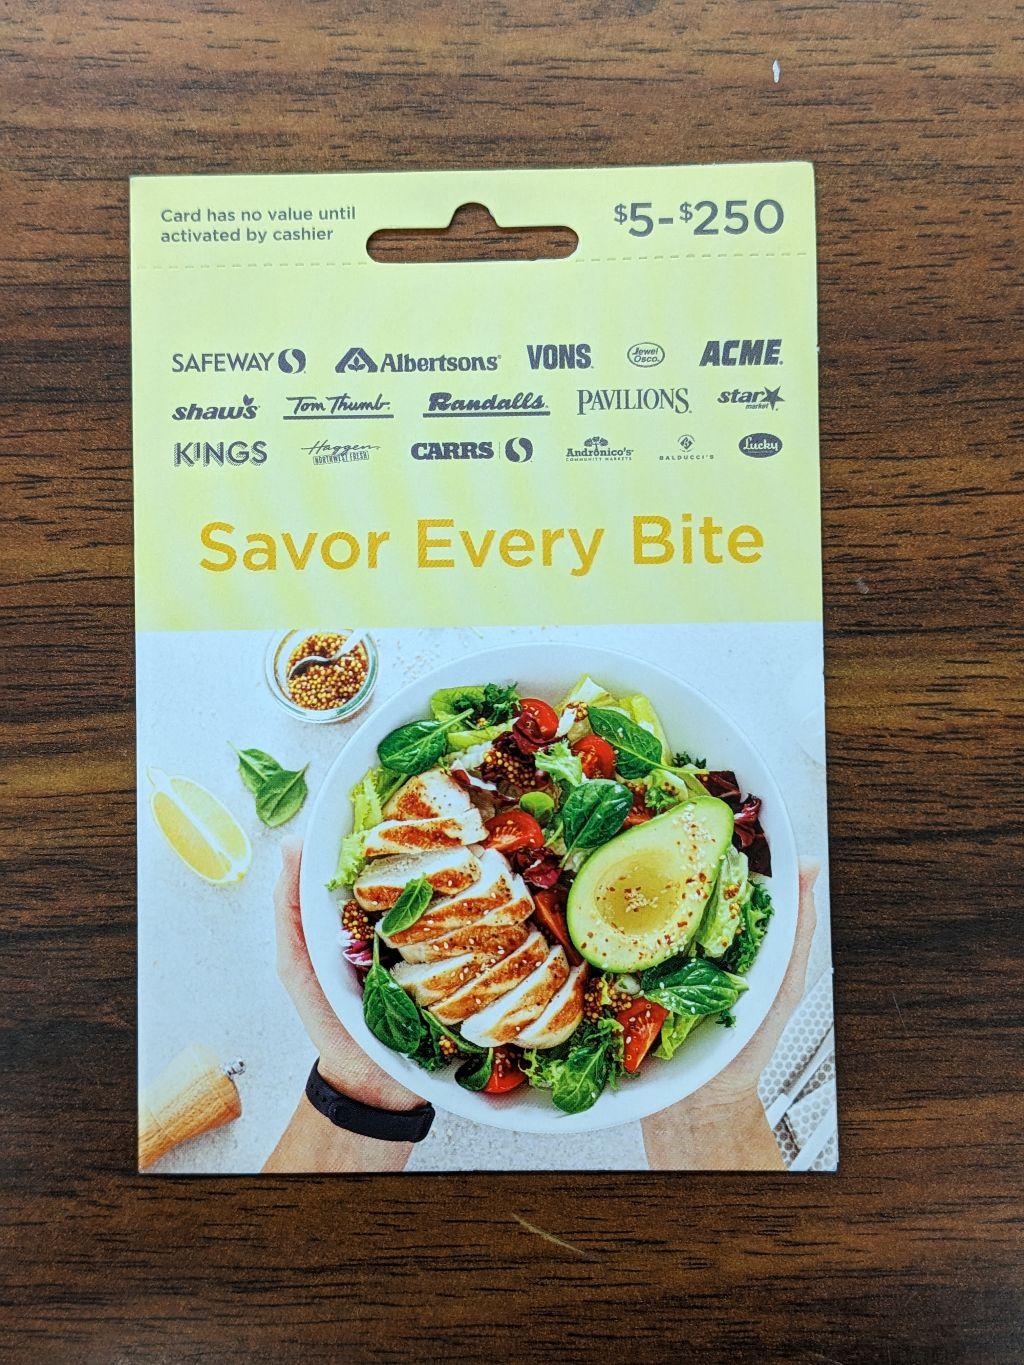 Safeway $25 Gift Card